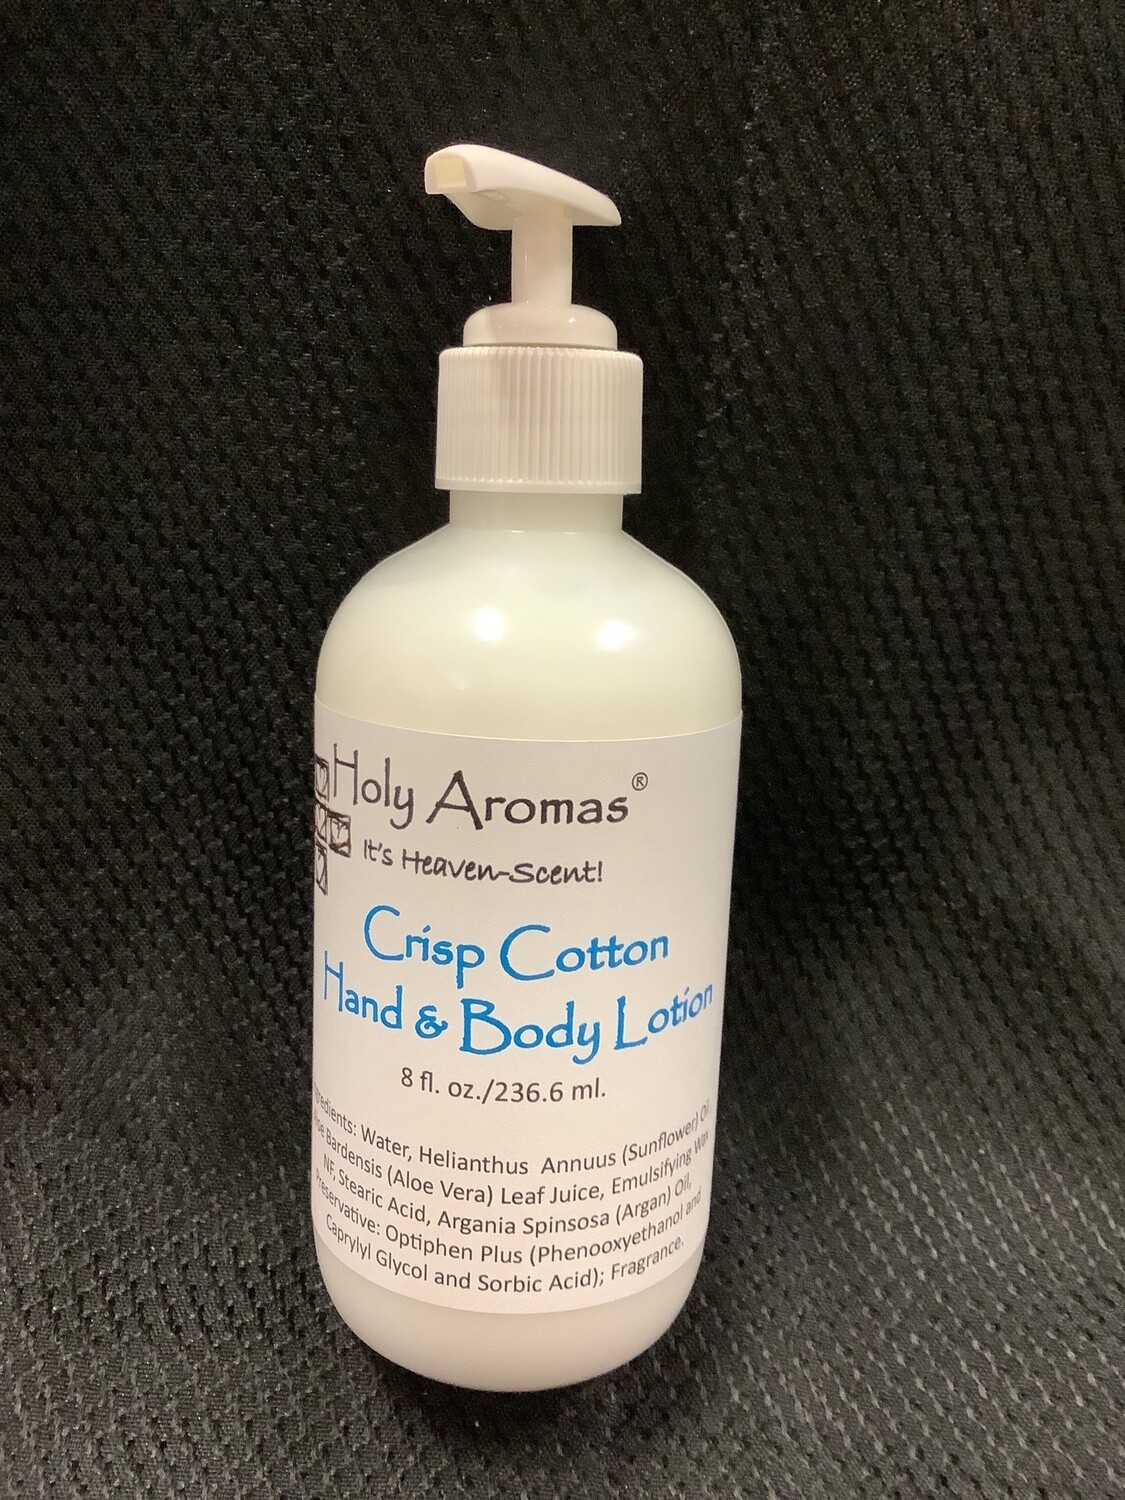 Crisp Cotton Hand & Body Lotion 8 oz